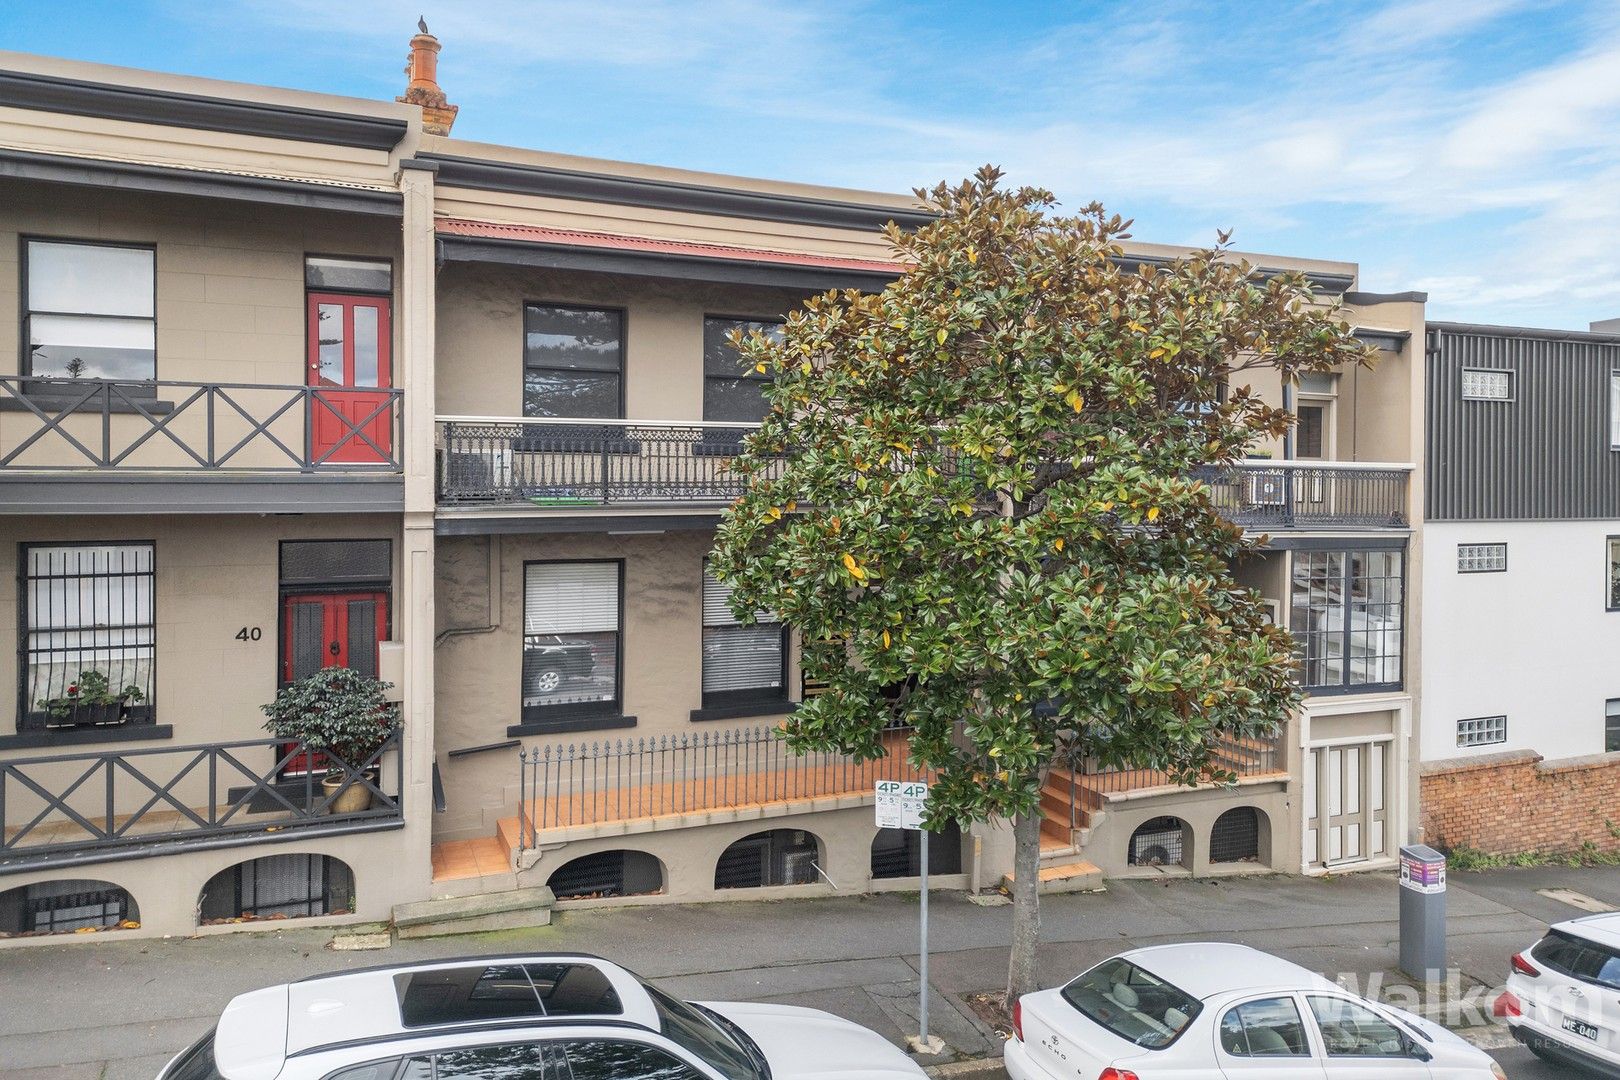 3 bedrooms Terrace in 38 Church Street NEWCASTLE NSW, 2300